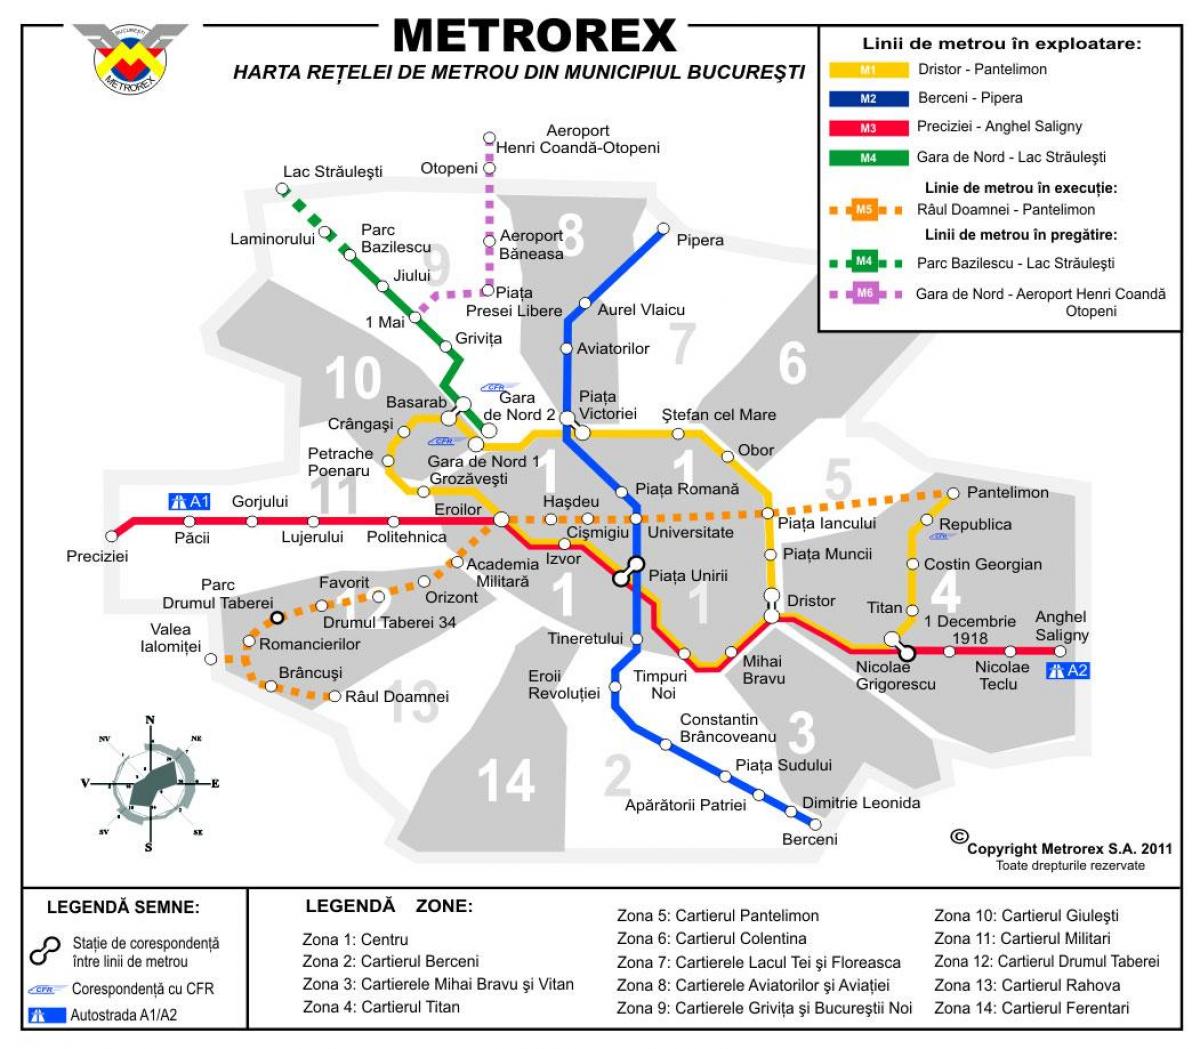 Mapa ng metrorex 